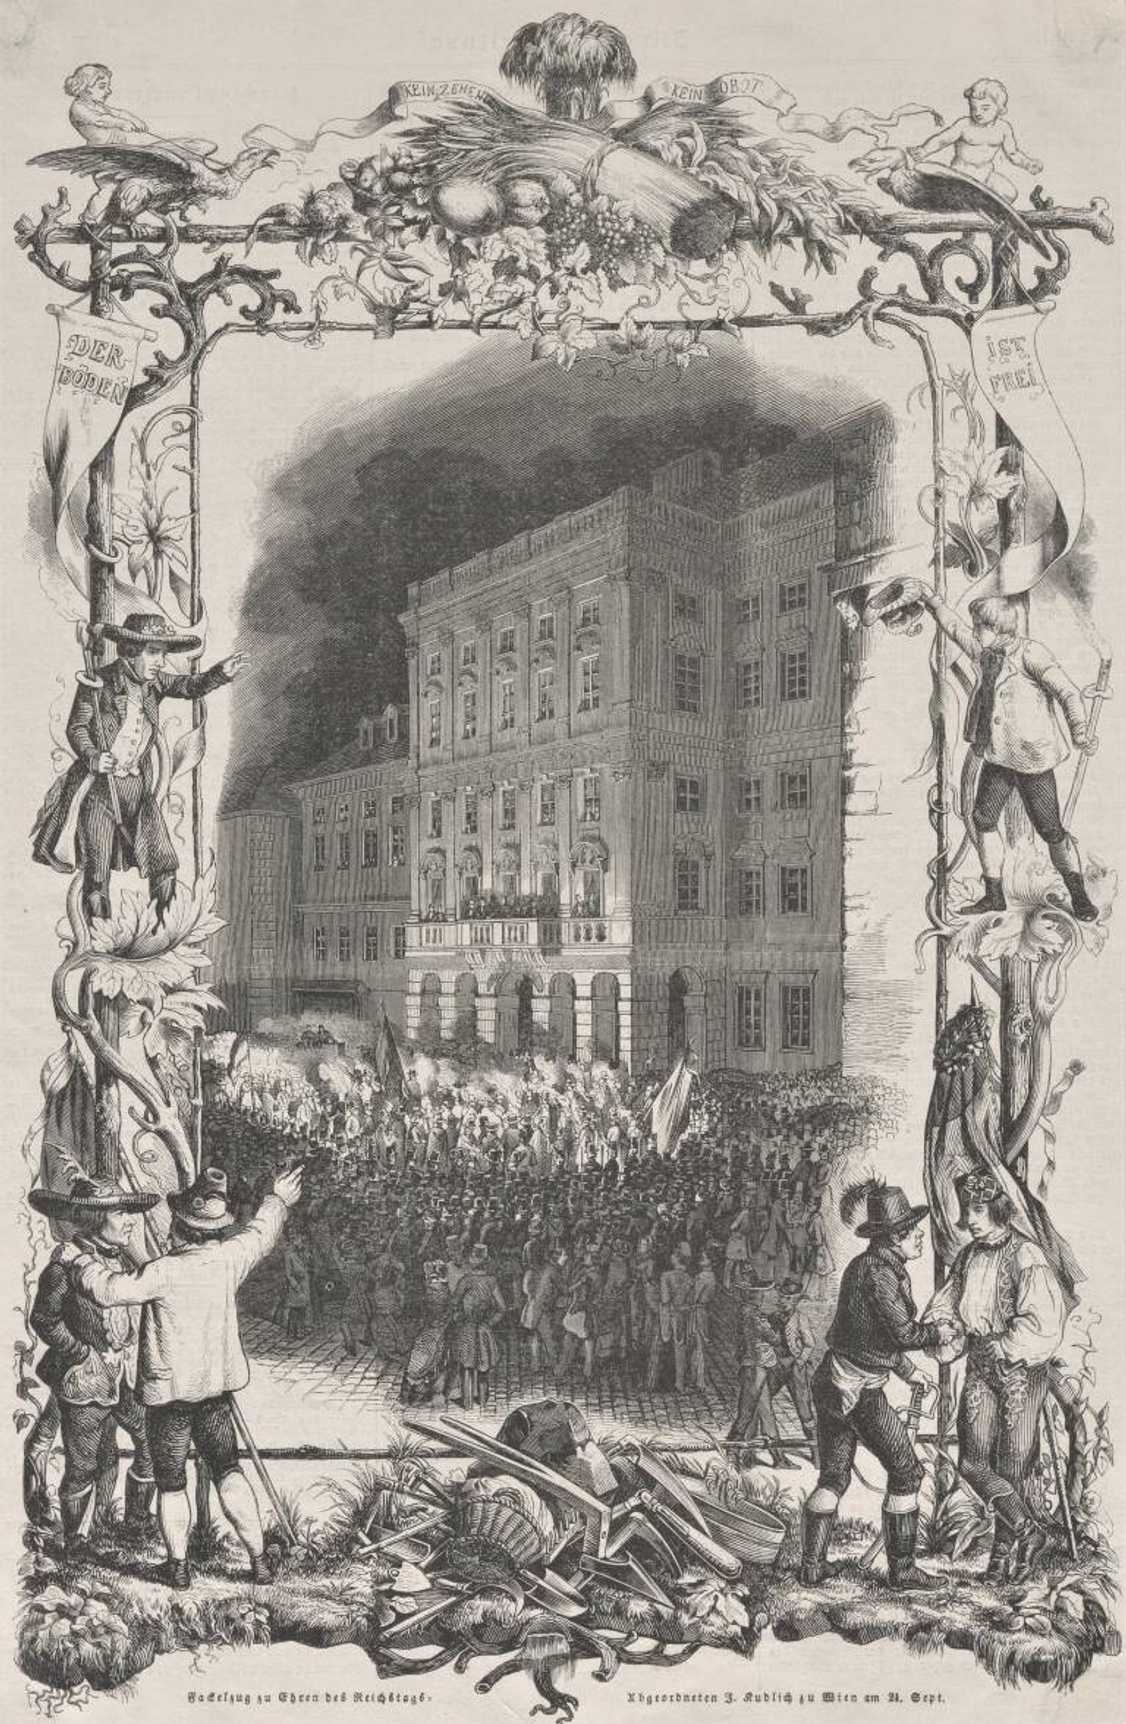 Pochodňový průvod 24. září 1848 ve Vídni k poctě Hanse Kudlicha, “osvoboditele rolníků”
